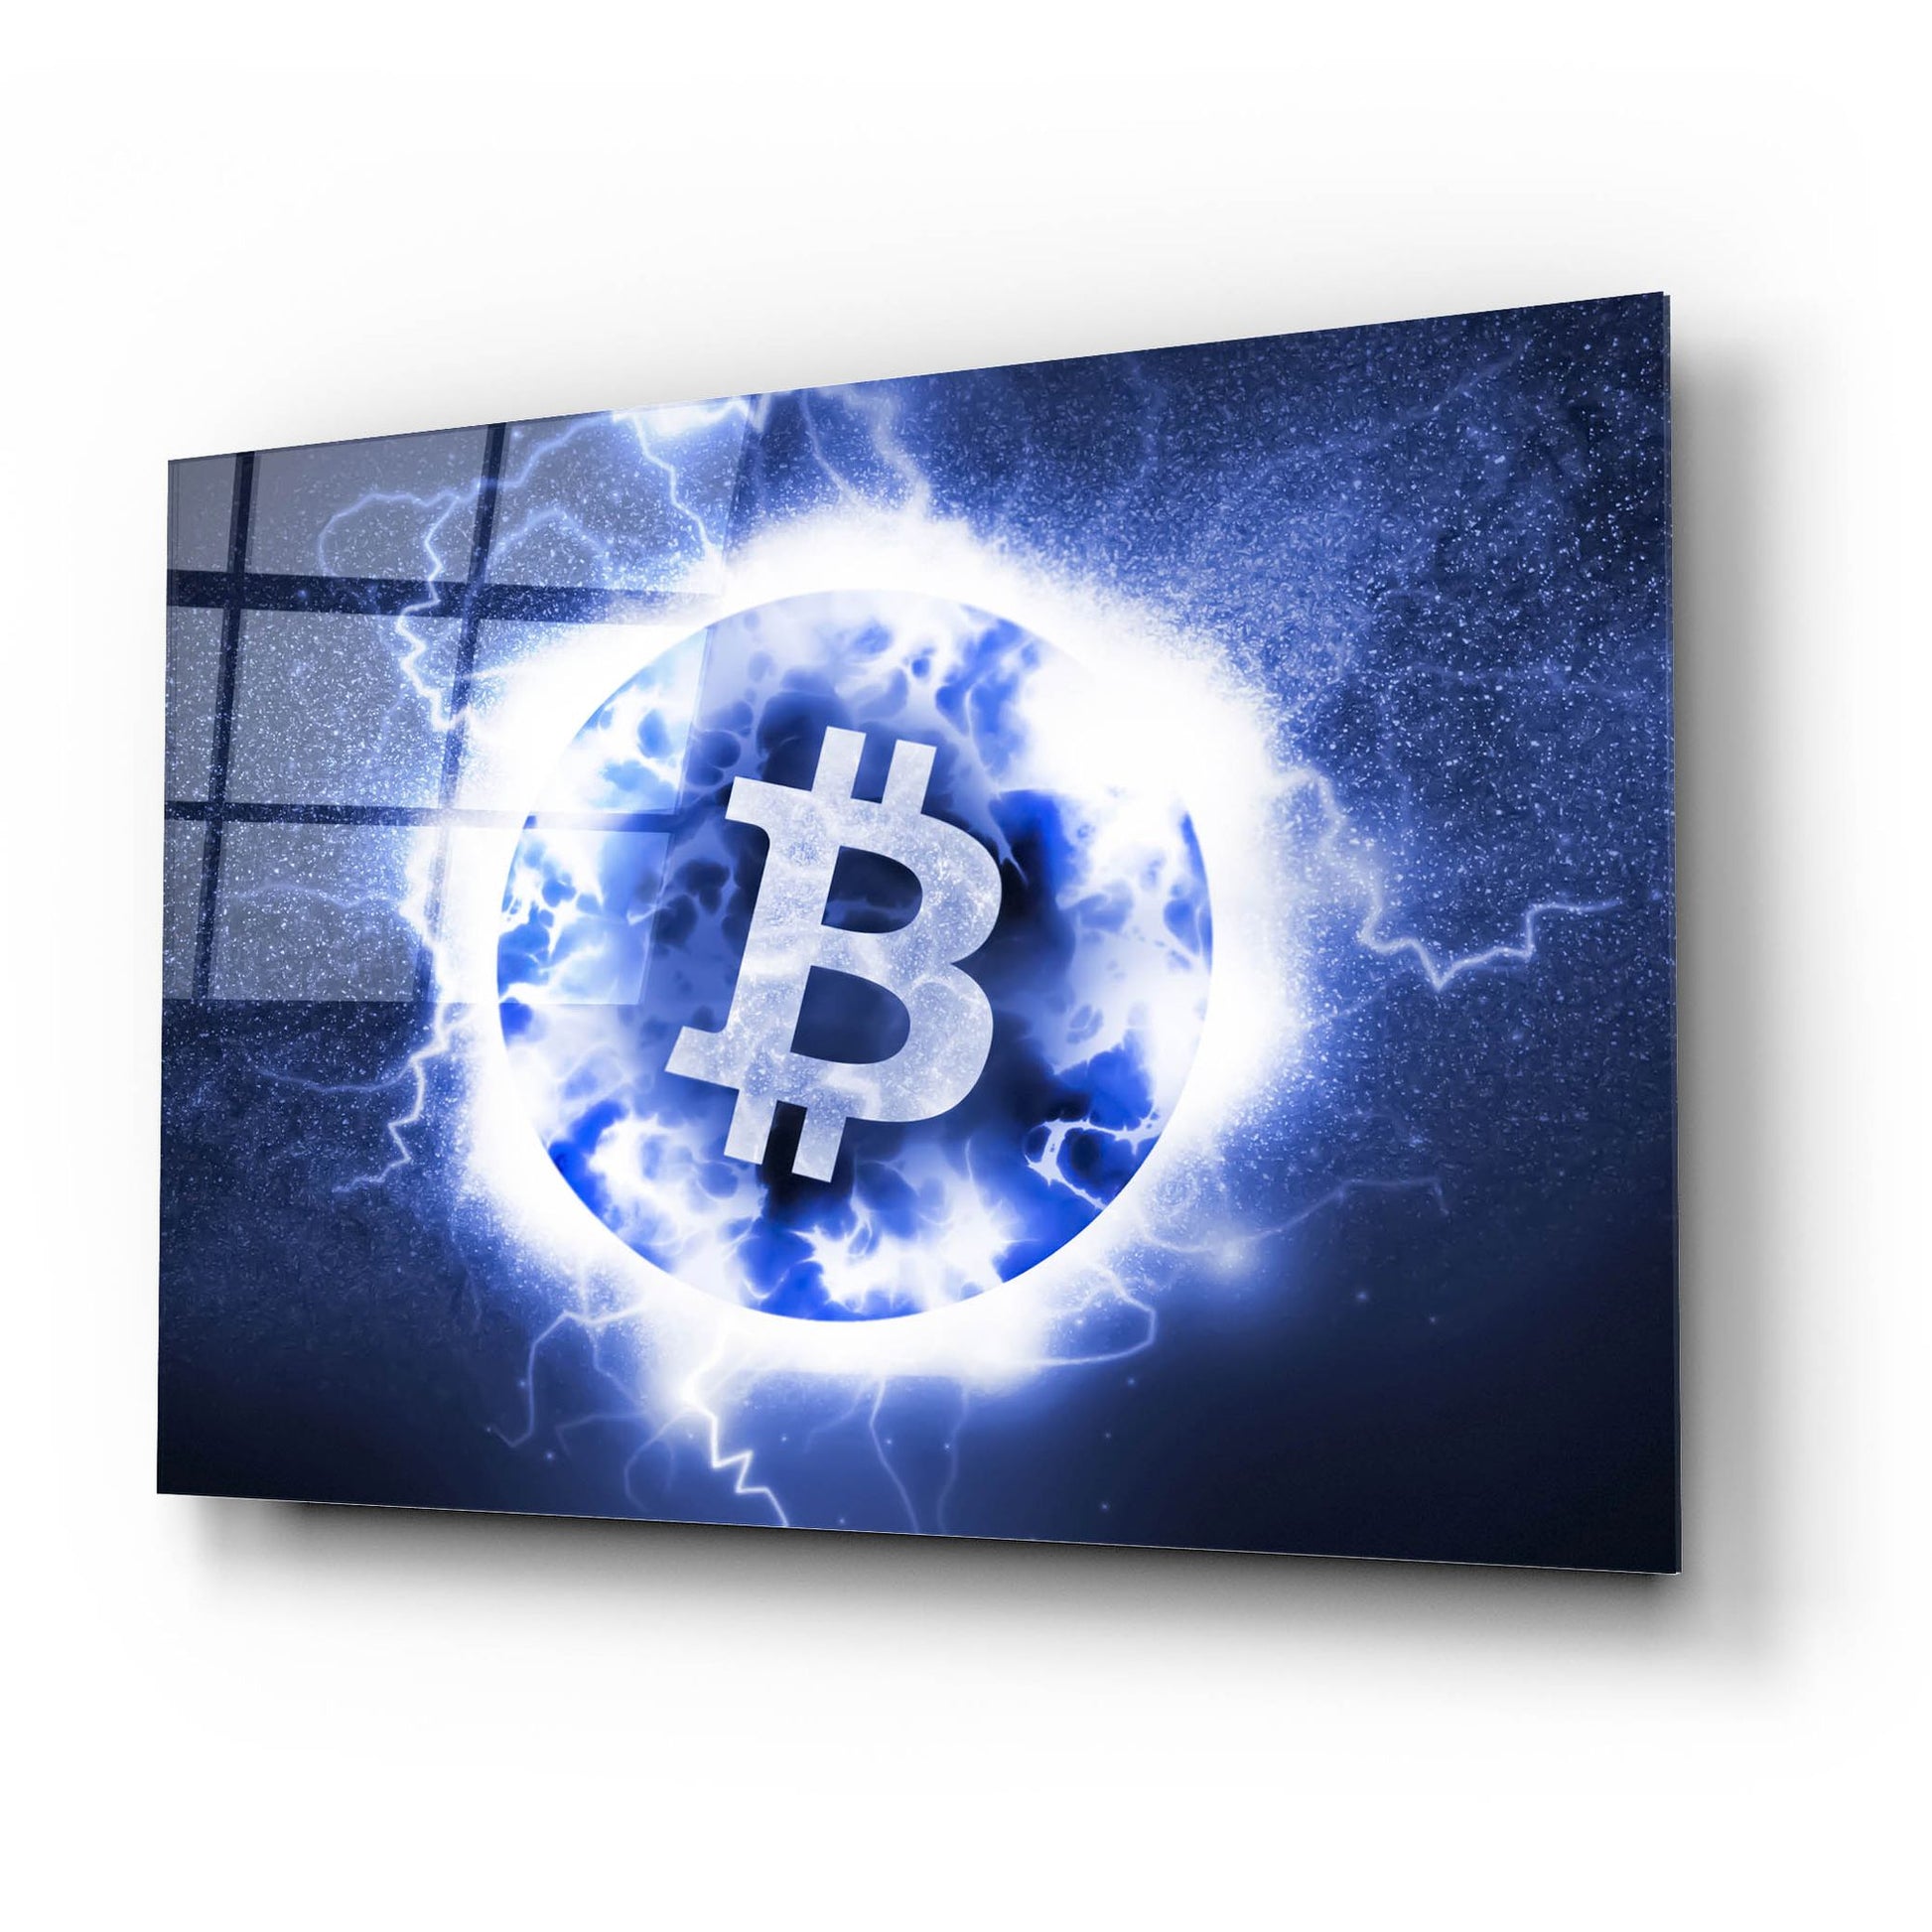 Epic Art 'Crypto Eclipse Bitcoin Btc' by Epic Portfolio, Acrylic Glass Wall Art,24x16